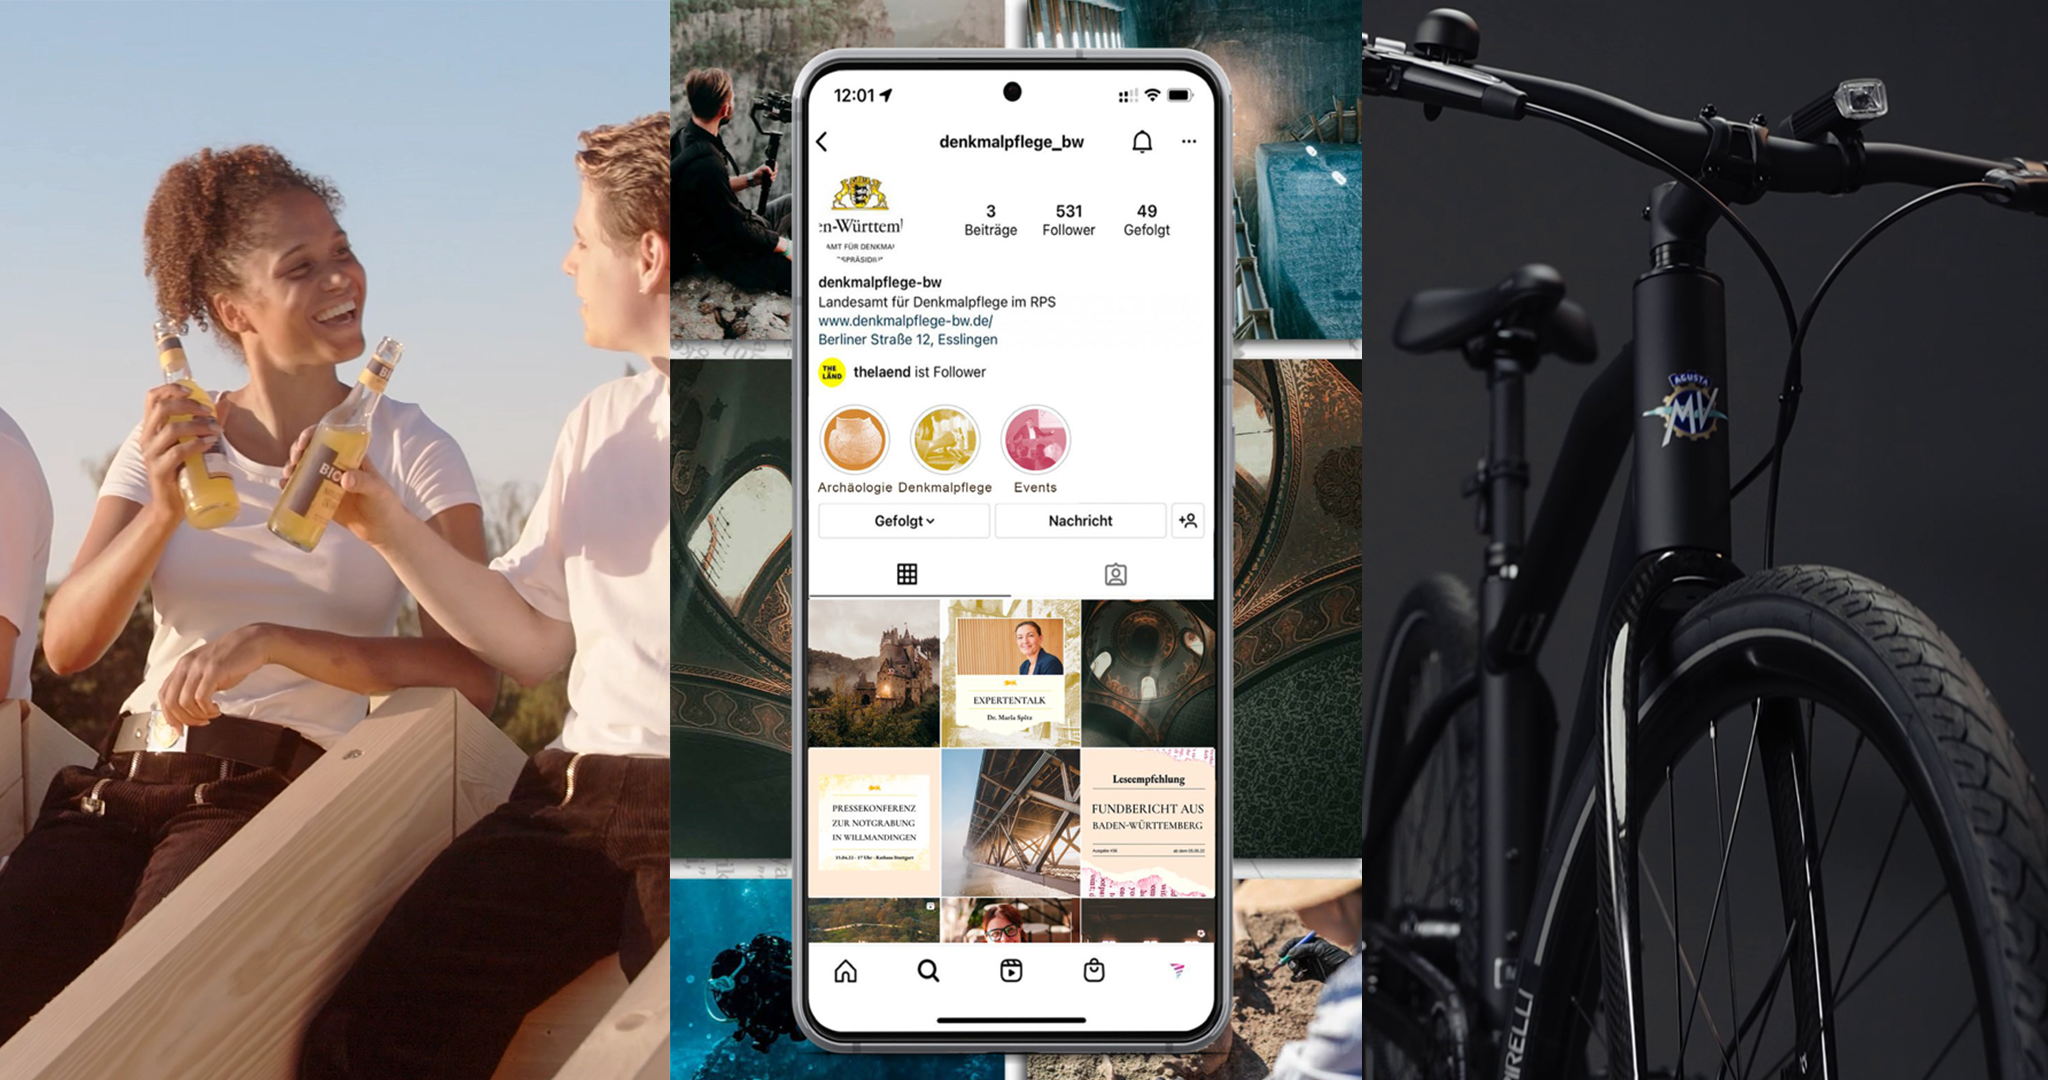 Raster aus 3 Bildern: links Personen die mit Getränk anstoßen, in der Mitte ein Smartphone mit einer Instagram Seite, rechts ein Fahrrad von vorne.